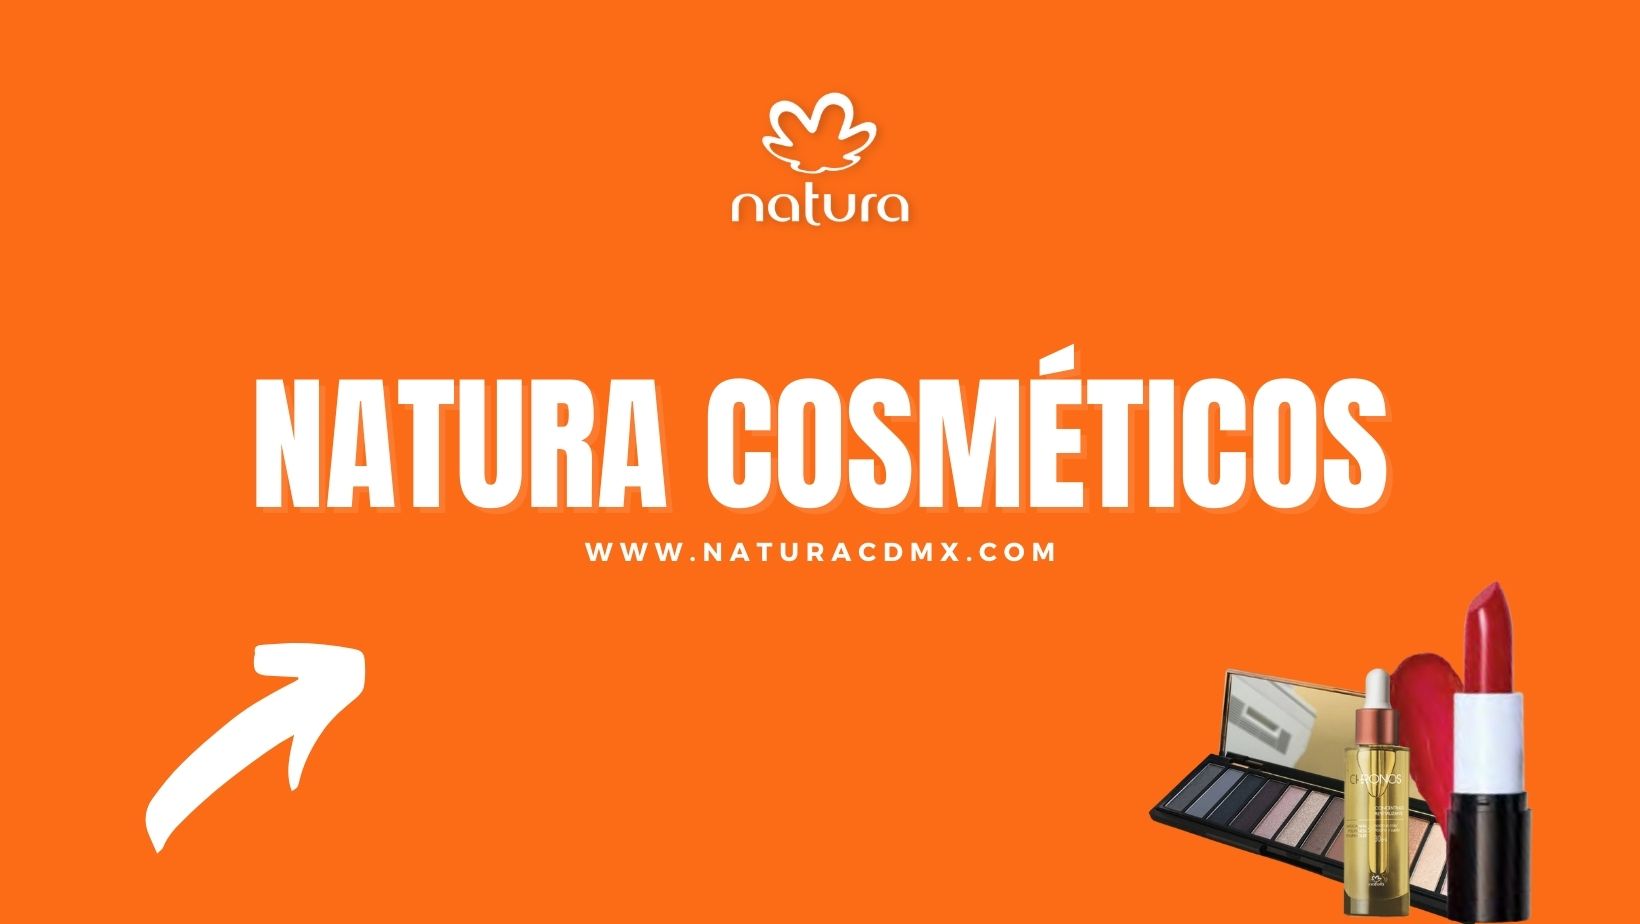 Natura Cosméticos - Natura CDMX | ¡Sé Consultora!